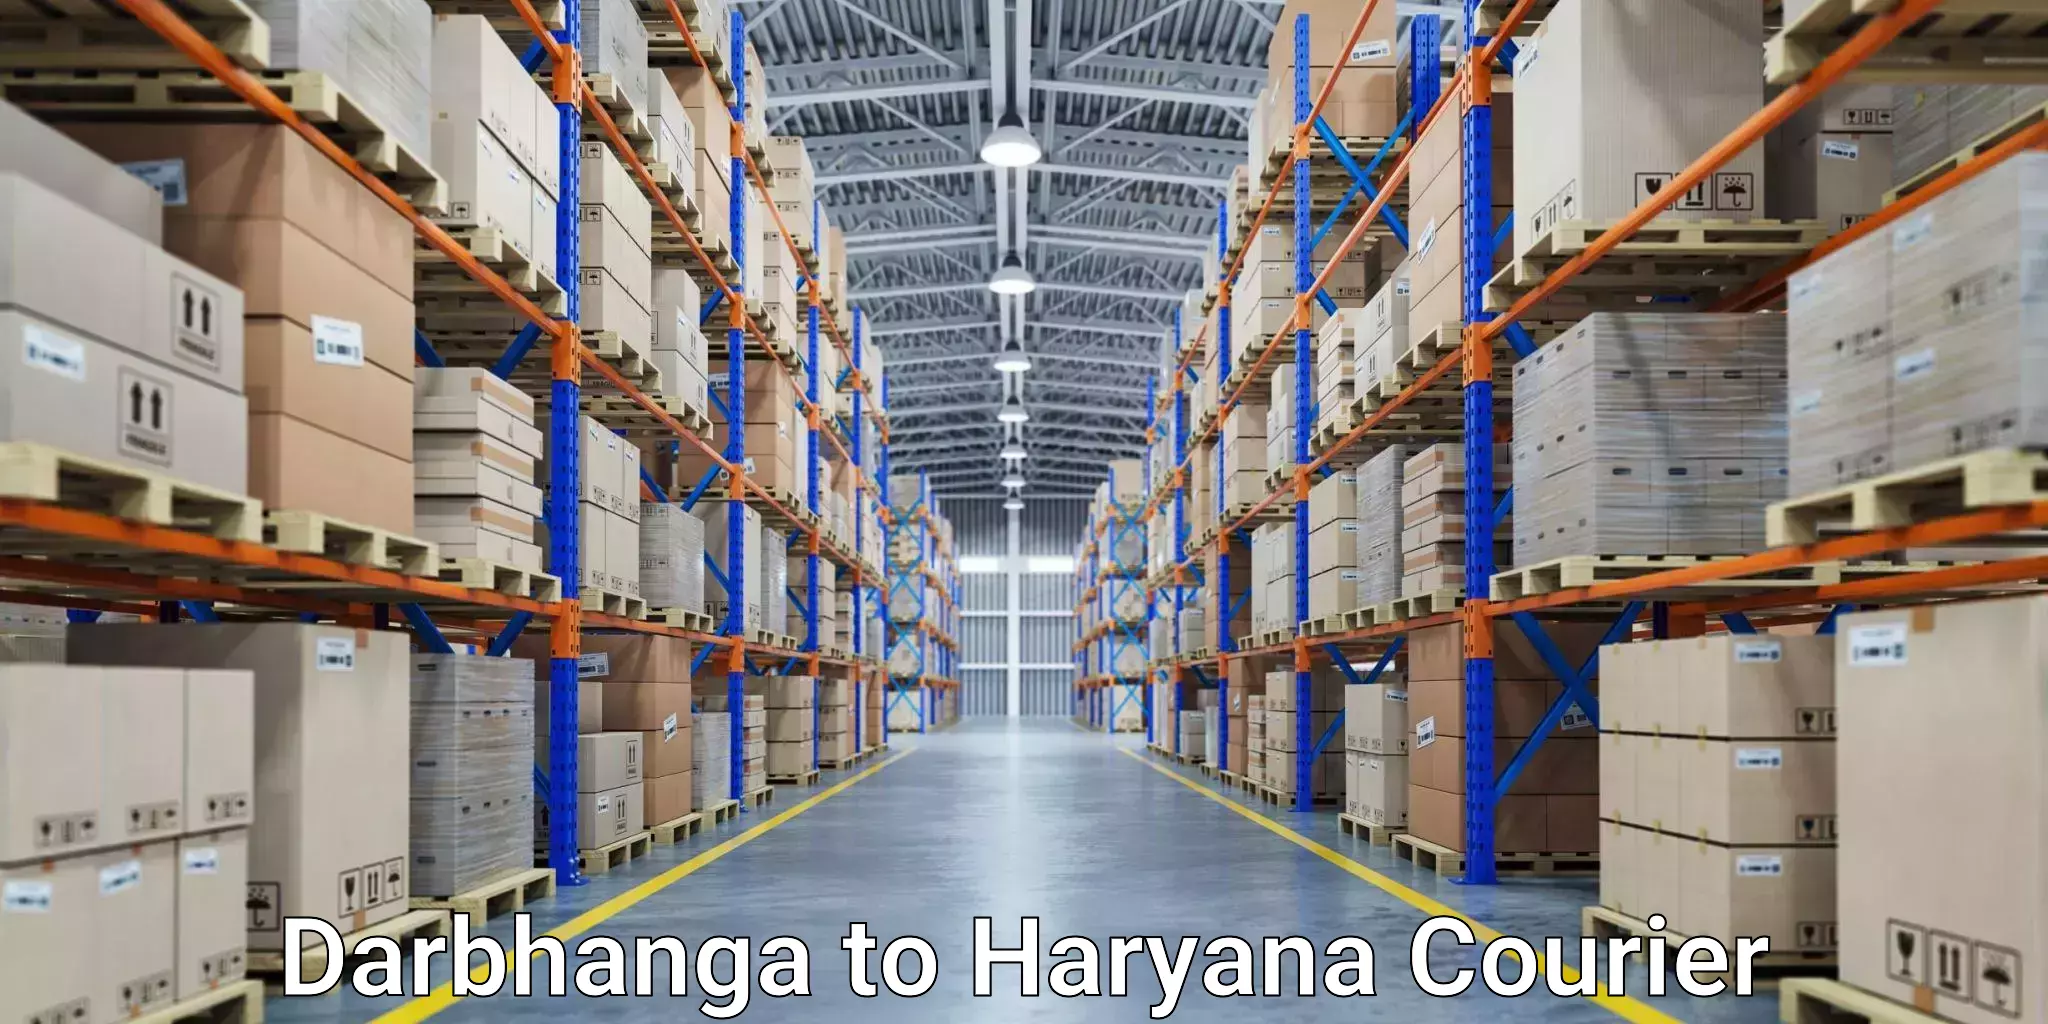 Customer-centric shipping Darbhanga to Kurukshetra University